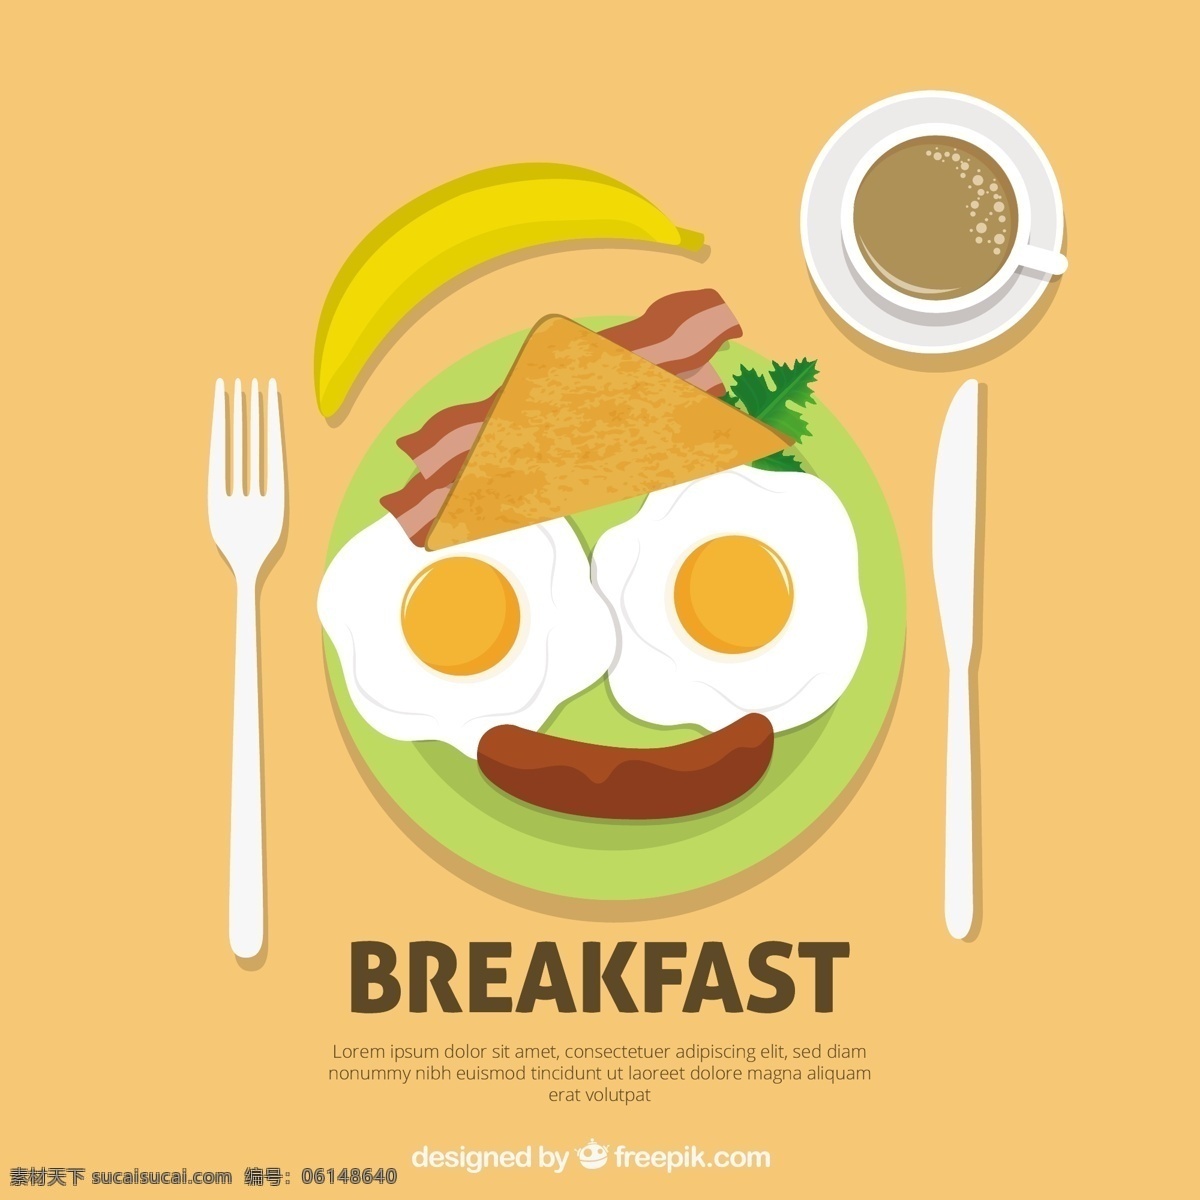 愉快 脸 早餐 食品 背景 咖啡 水果 面包 三明治 香蕉 鸡蛋 吃 早晨 刀 菜 烤面包 上 熏猪肉